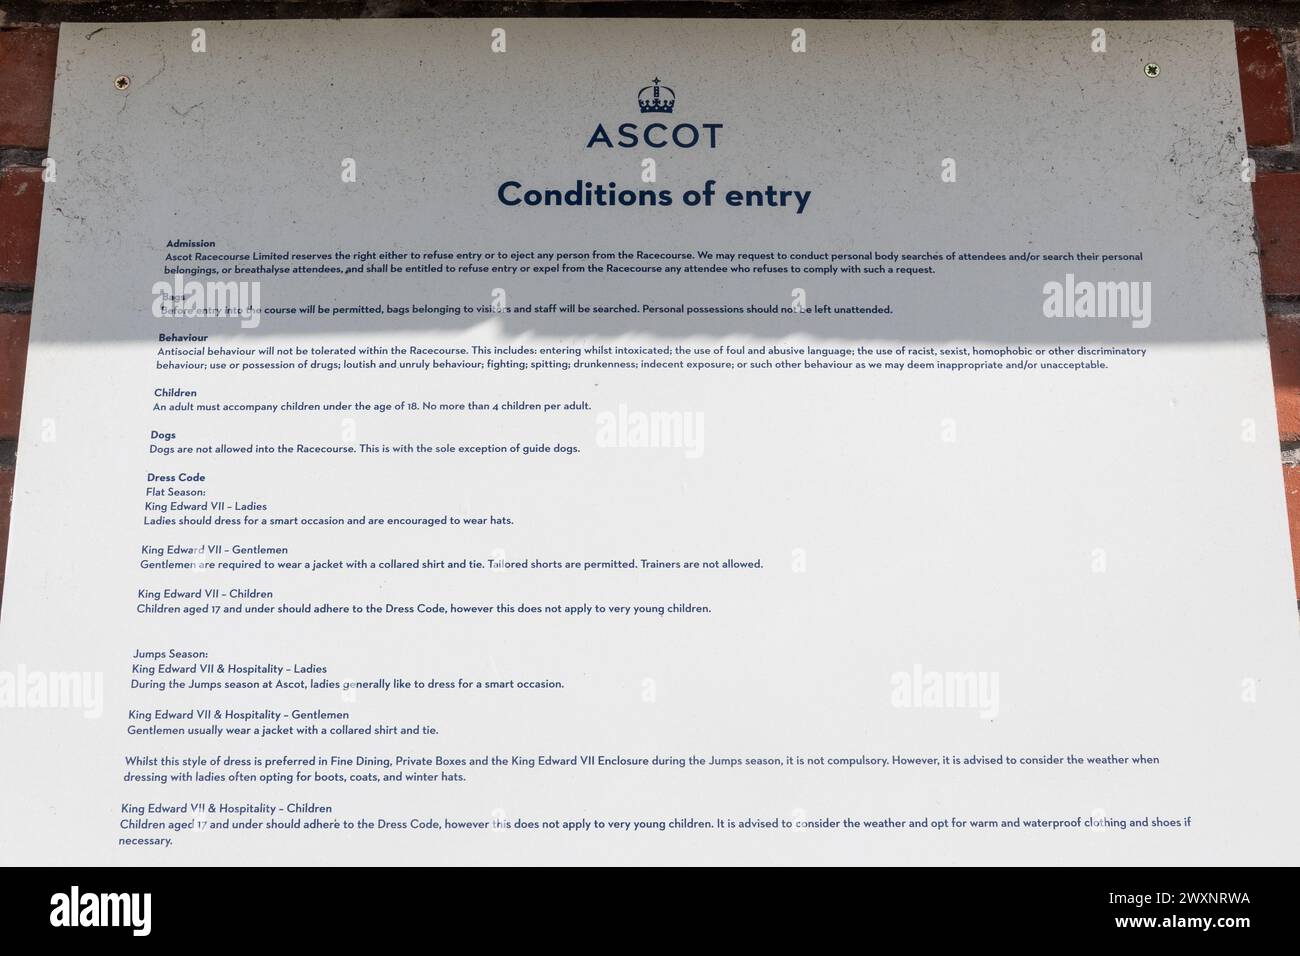 Panneau des conditions d'entrée à l'hippodrome d'Ascot, y compris les détails des exigences du code vestimentaire, Berkshire, Angleterre, Royaume-Uni Banque D'Images